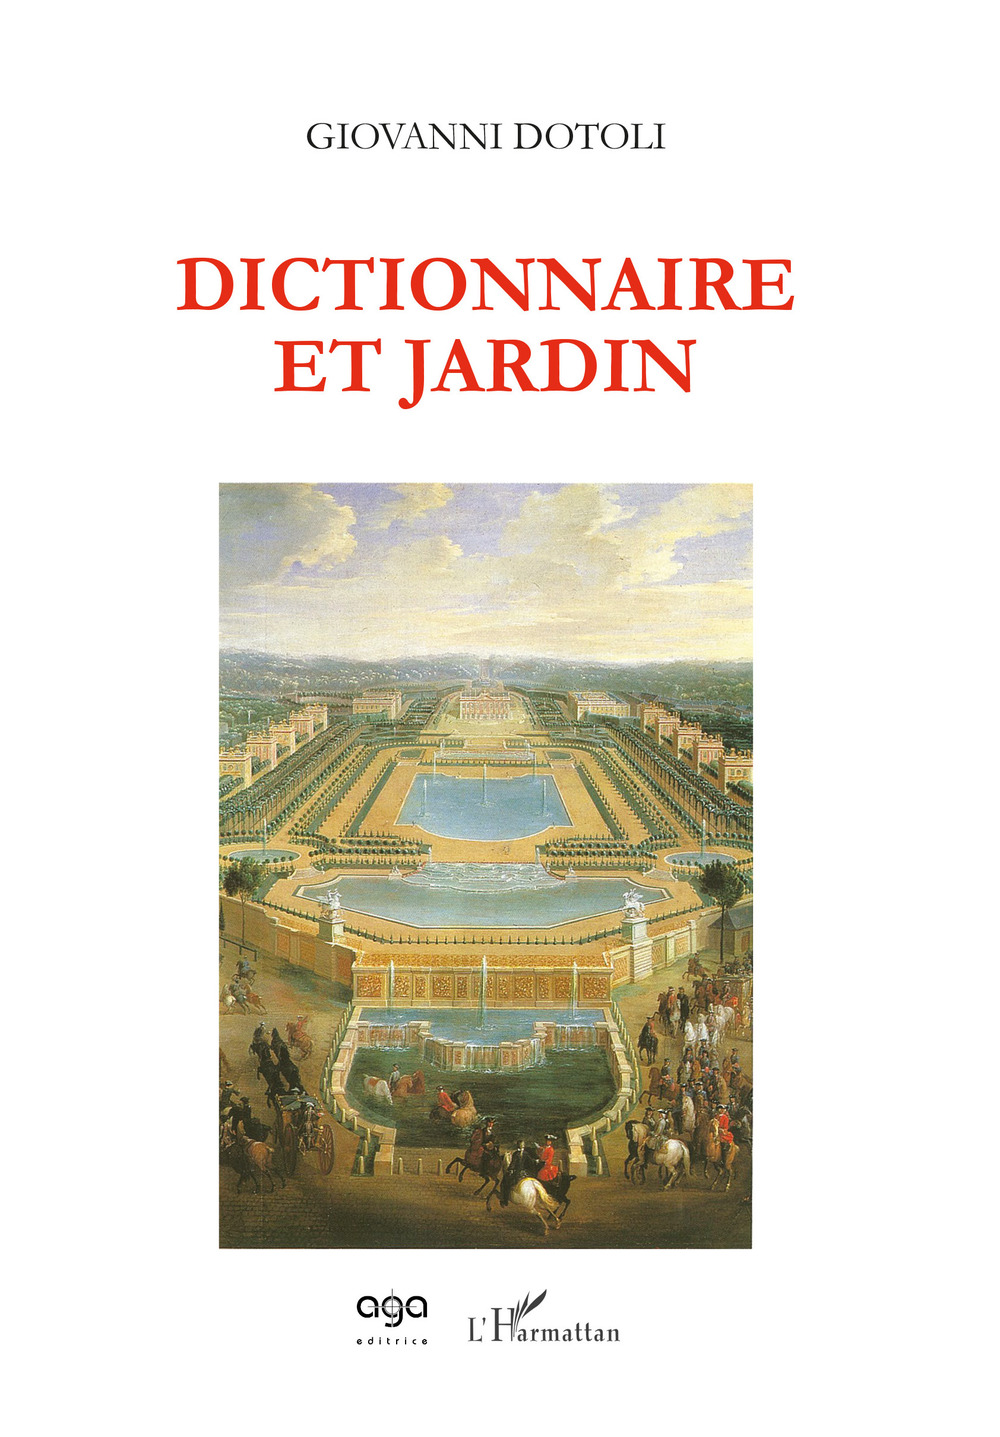 Dictionnaire et jardin